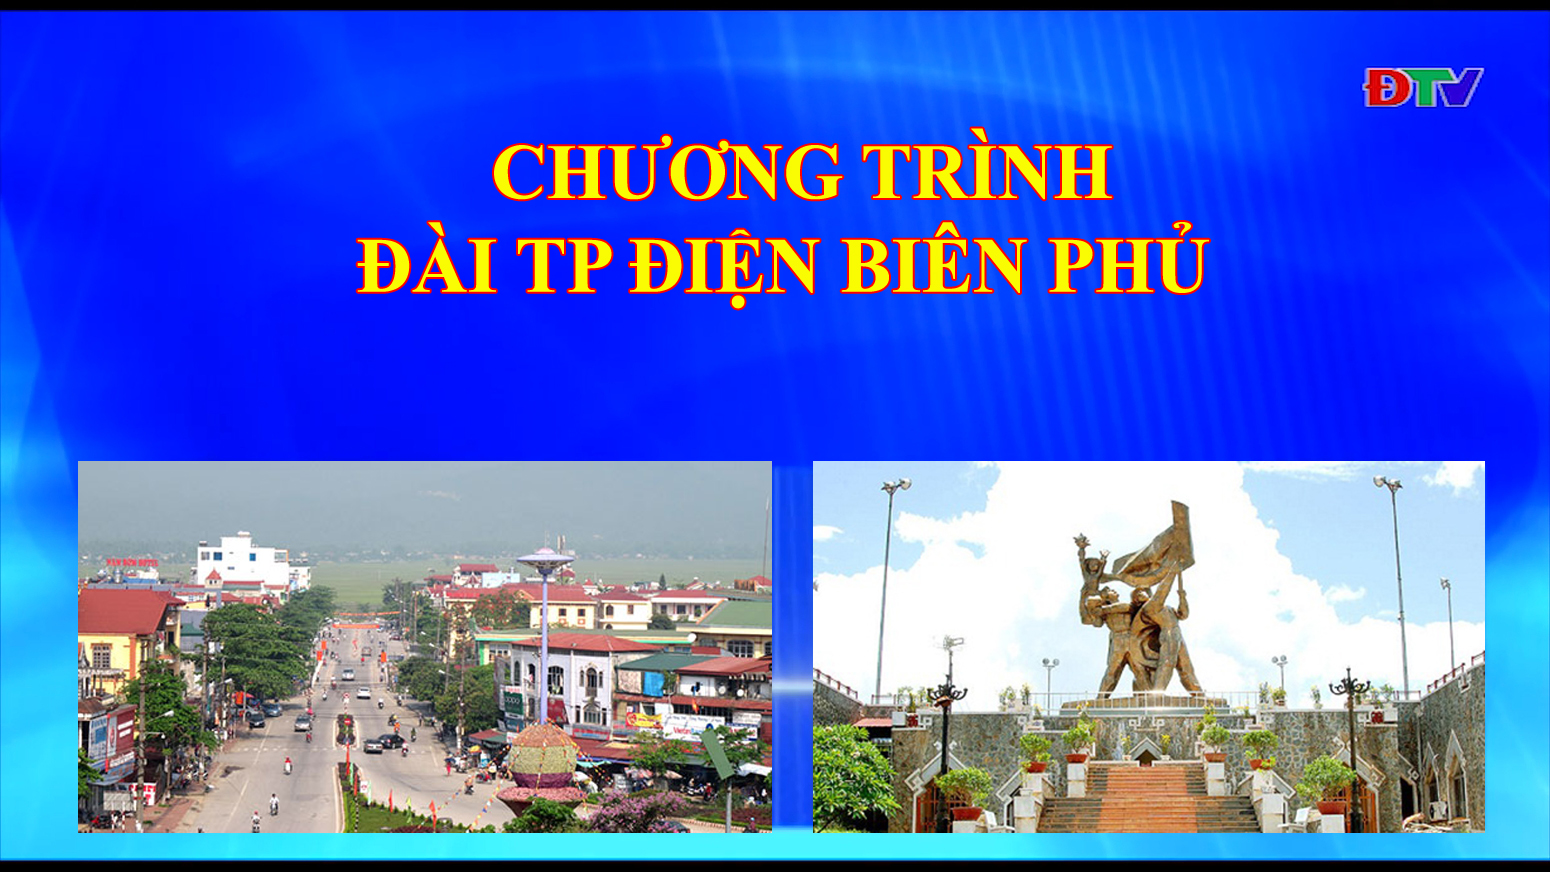 Đài thành phố Điện Biên Phủ (Ngày 17/03/2020)